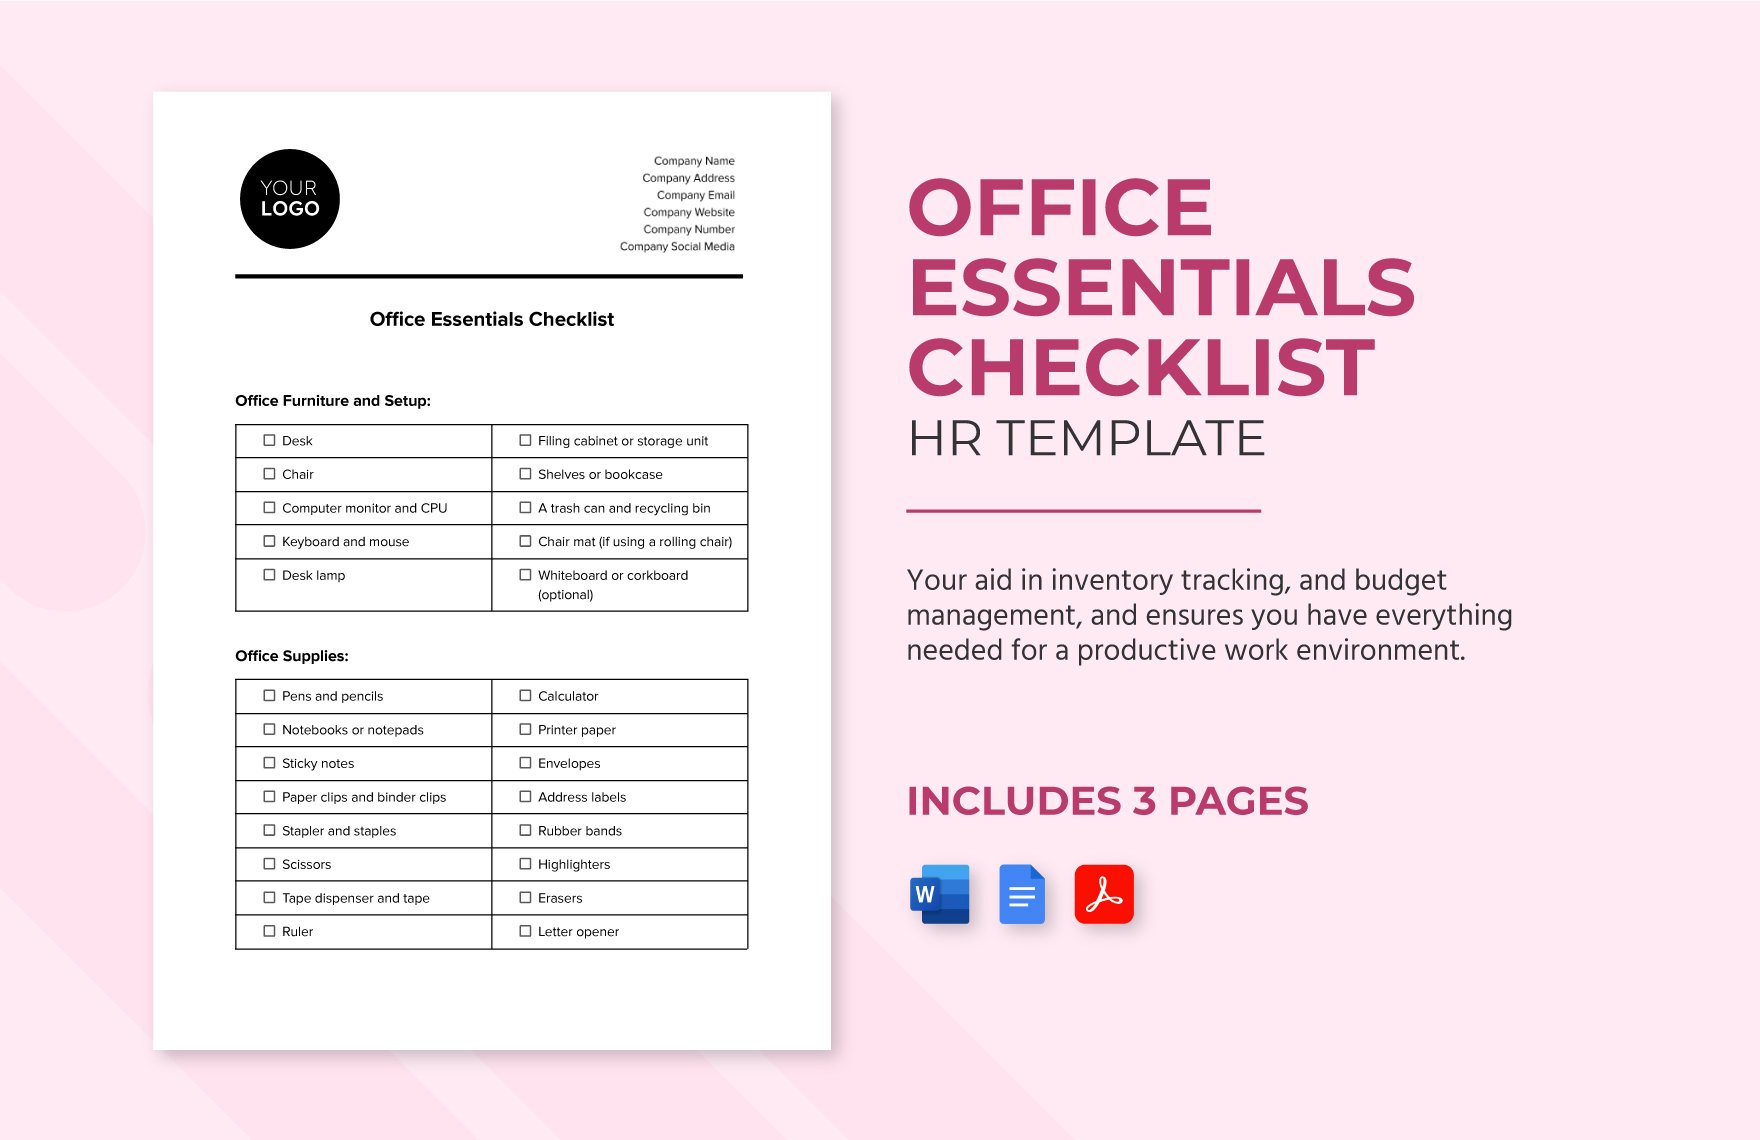 Office Essentials Checklist HR Template